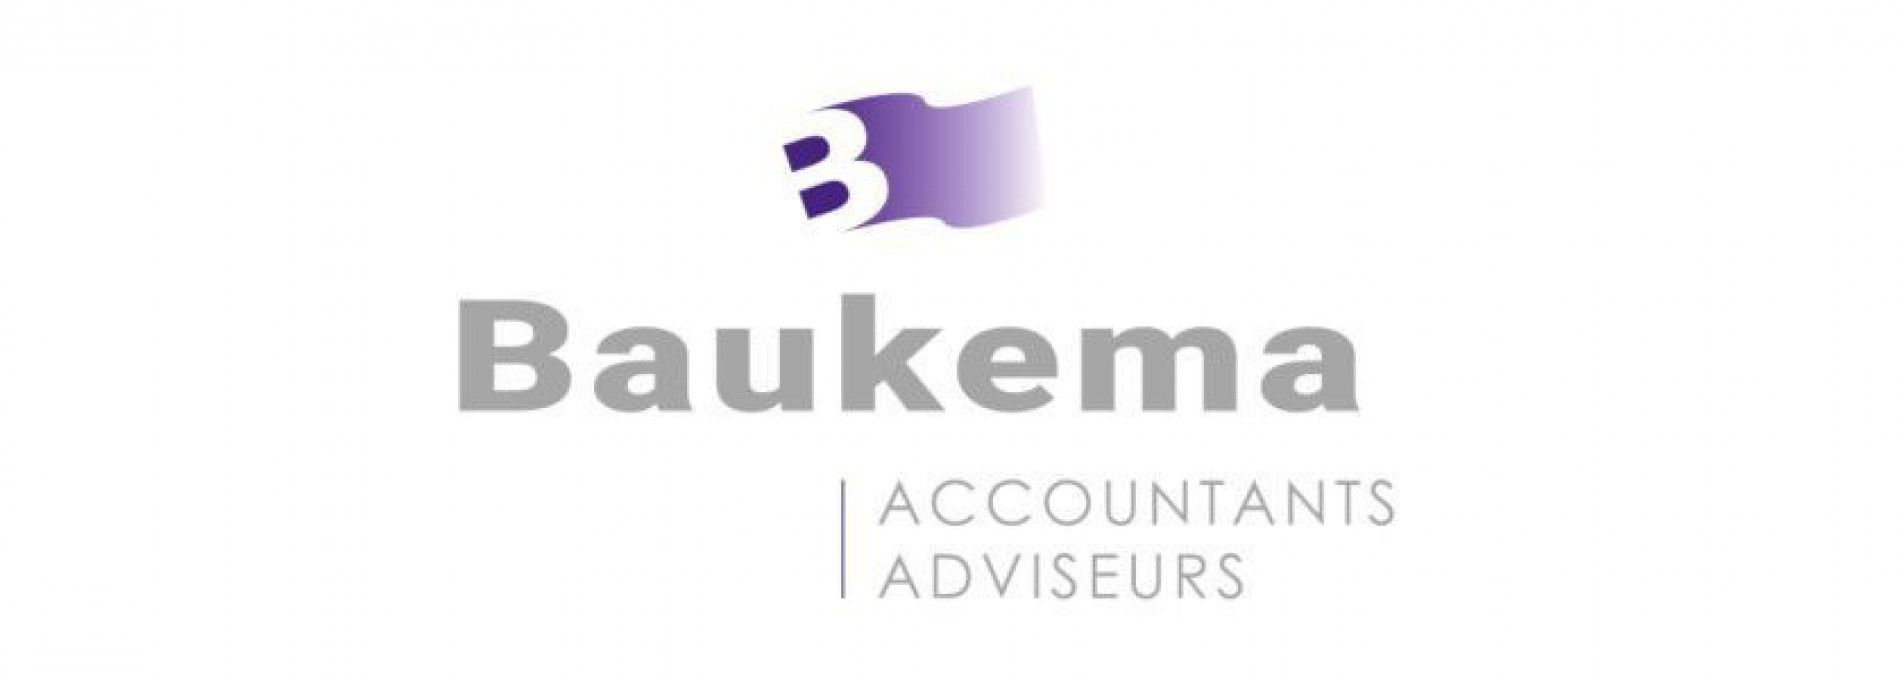 Baukema accountants